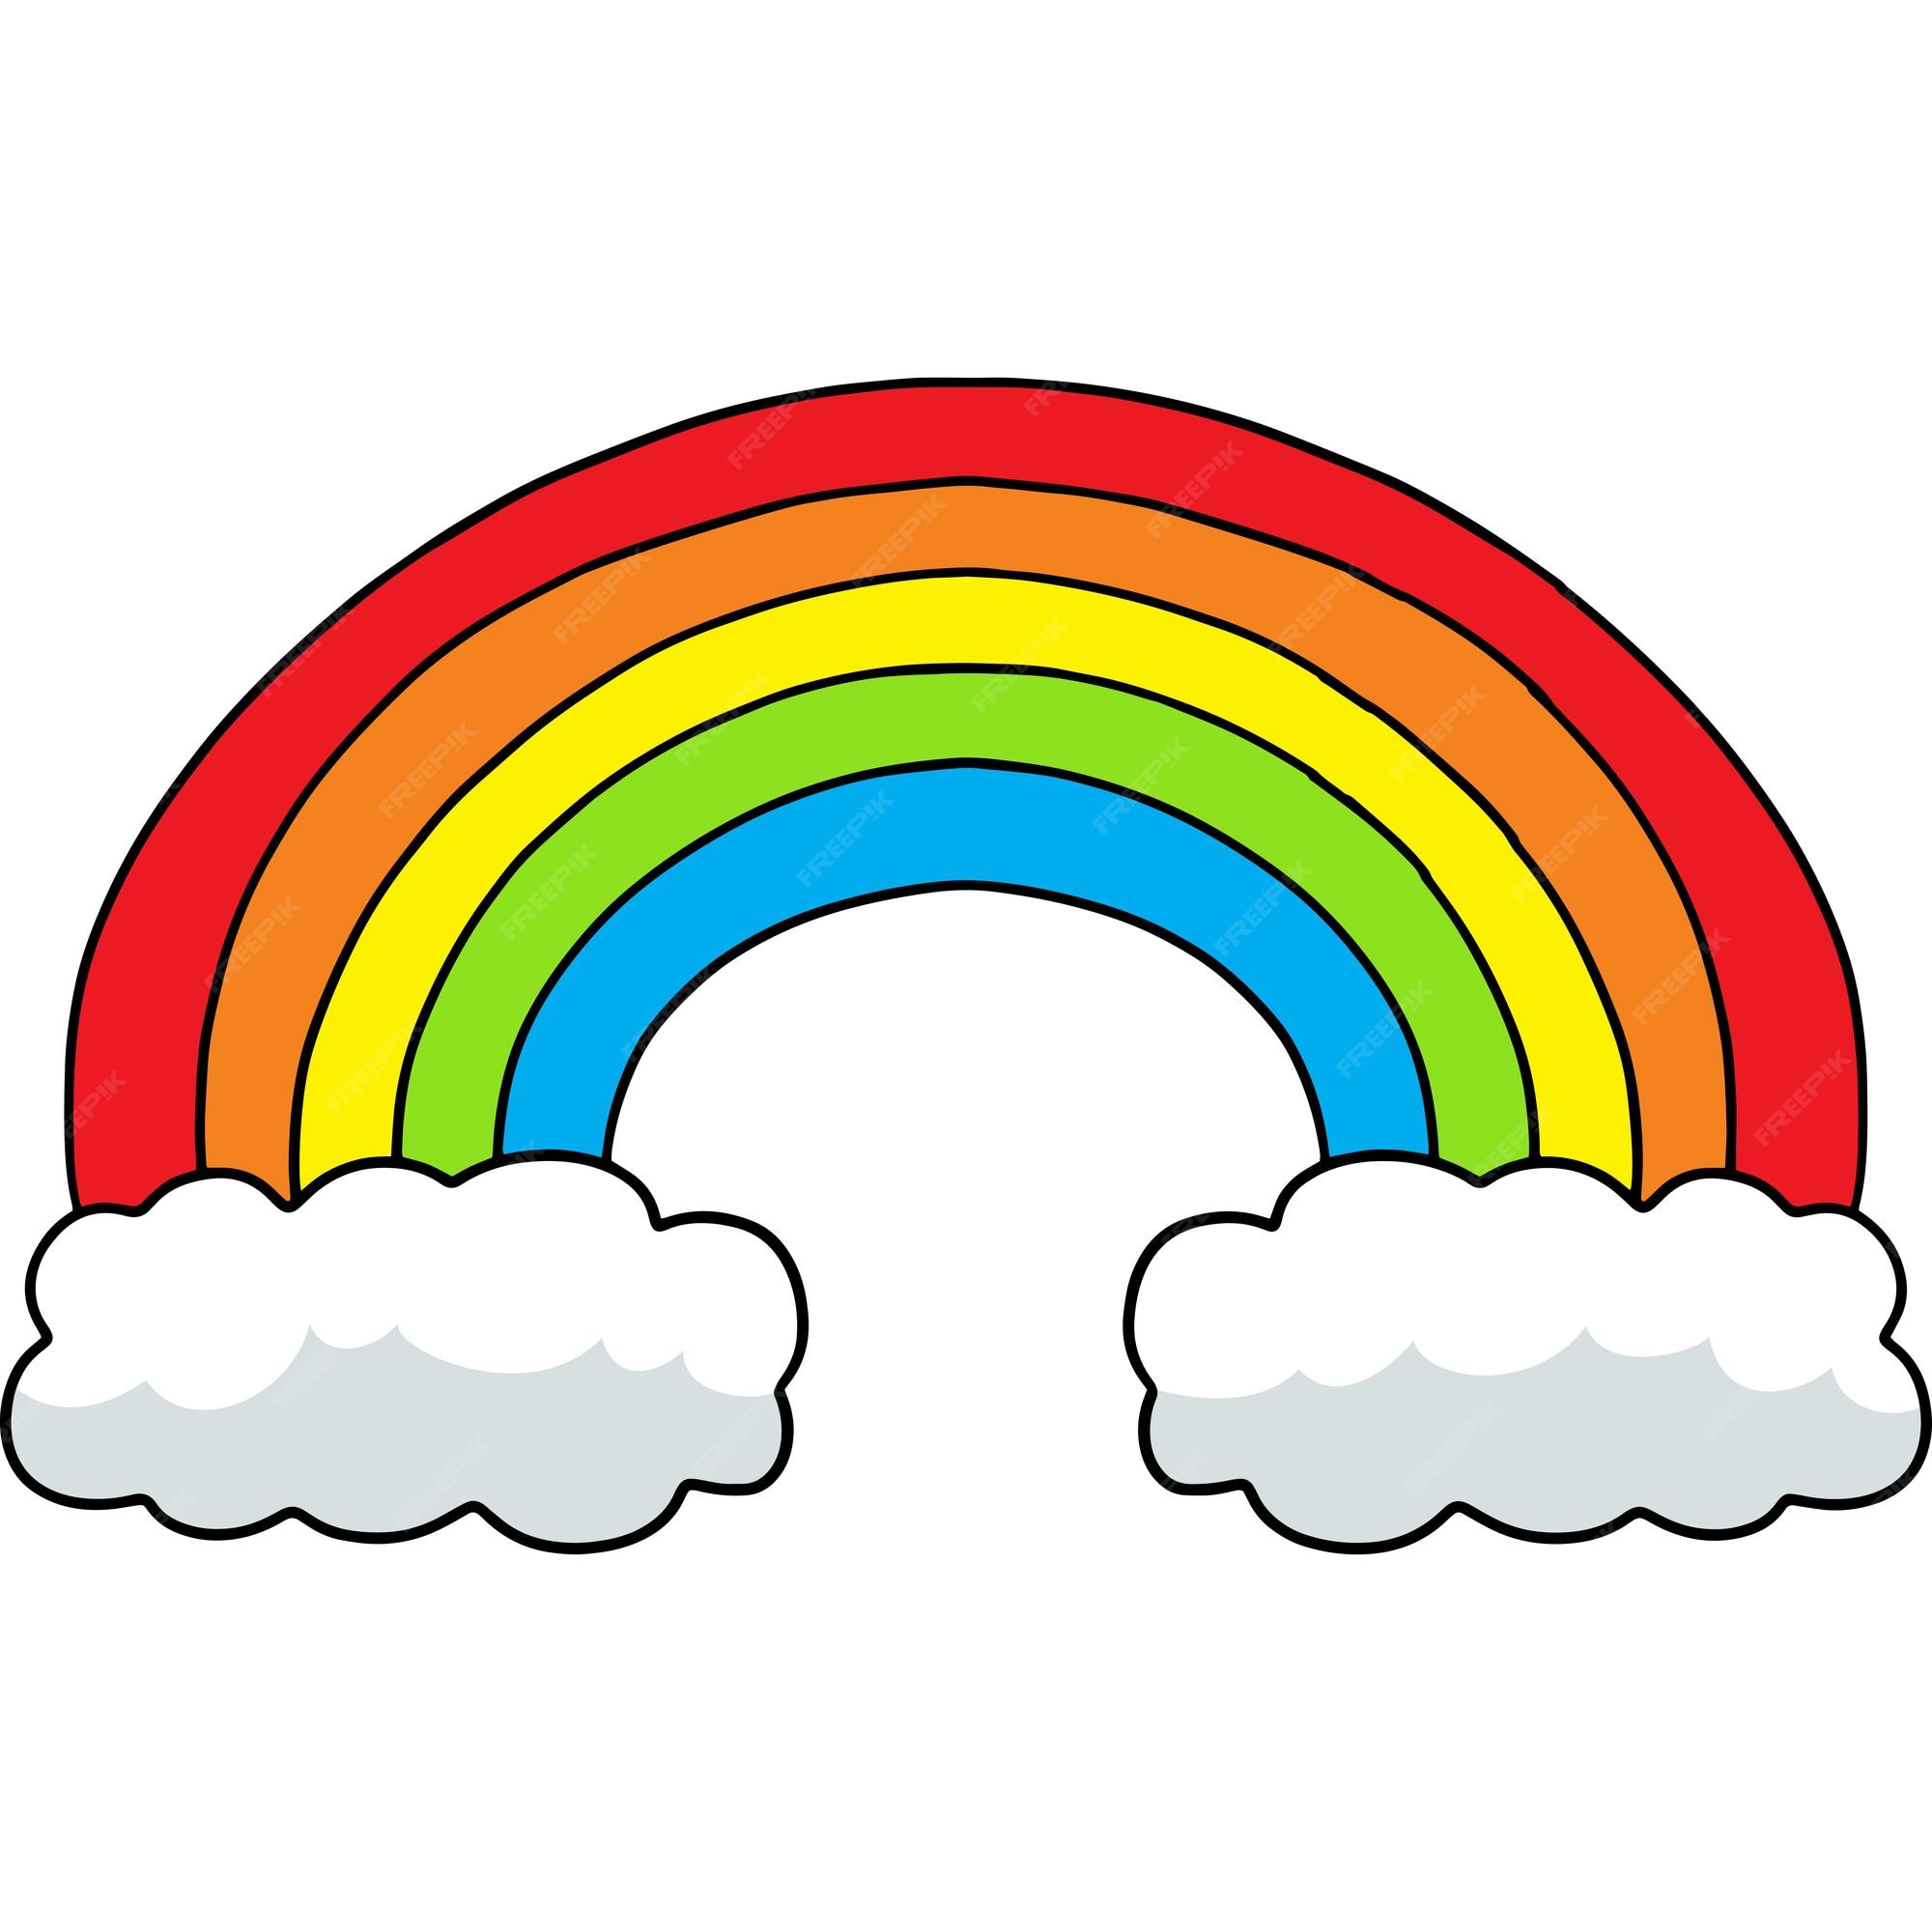 Premium Vector | Rainbow cartoon colored clipart illustration